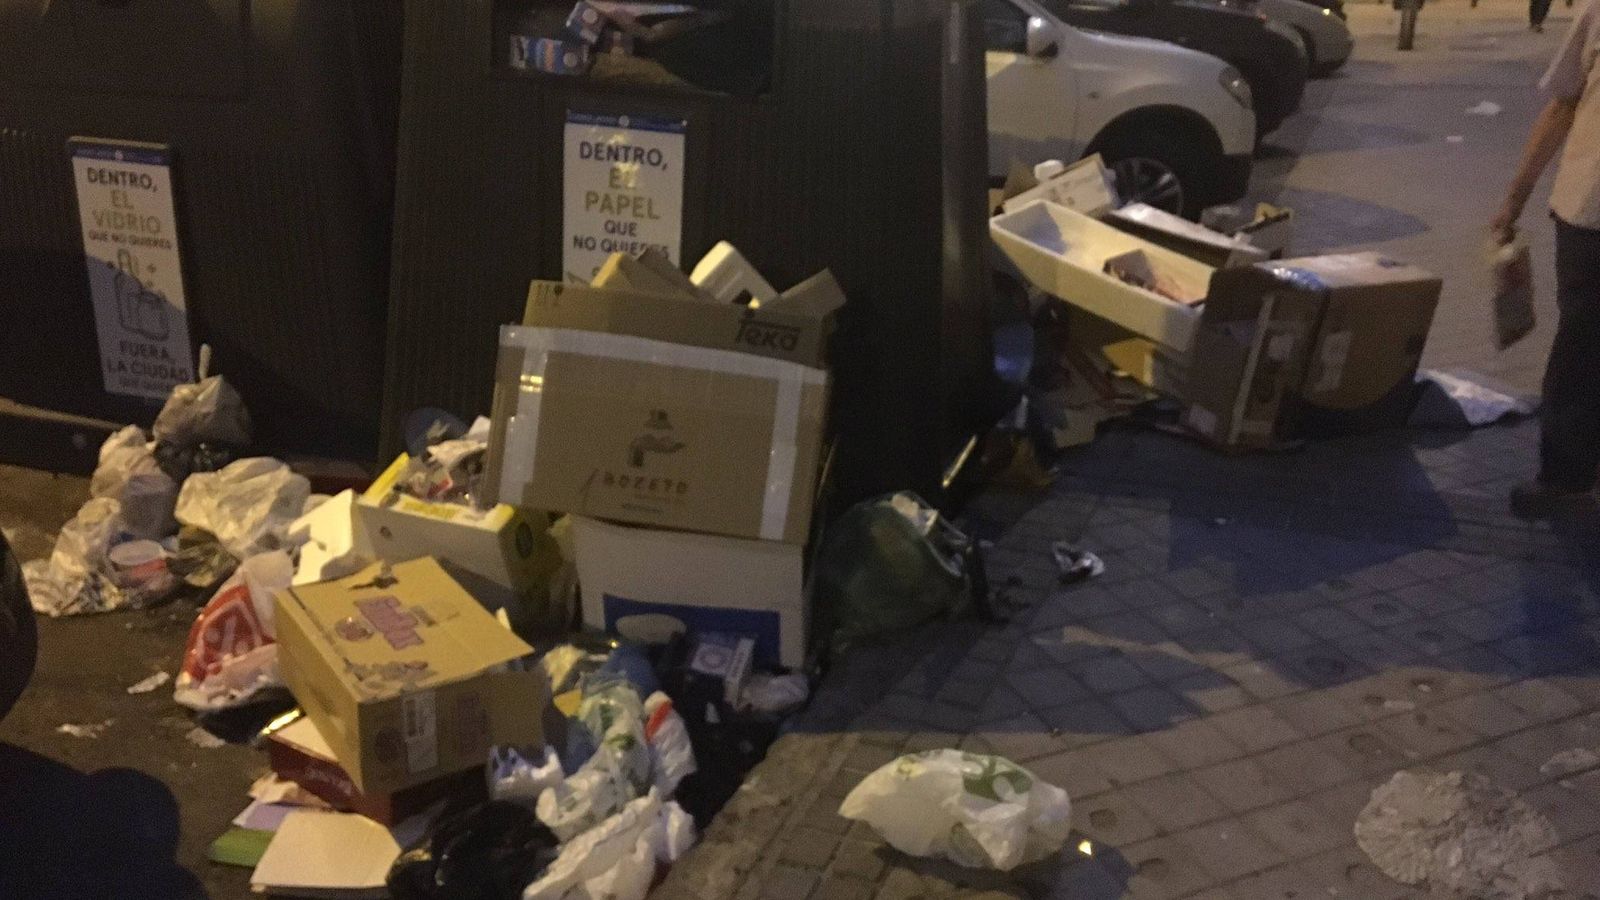 Foto: Basura tirada alrededor de contenedores en una calle de Madrid.